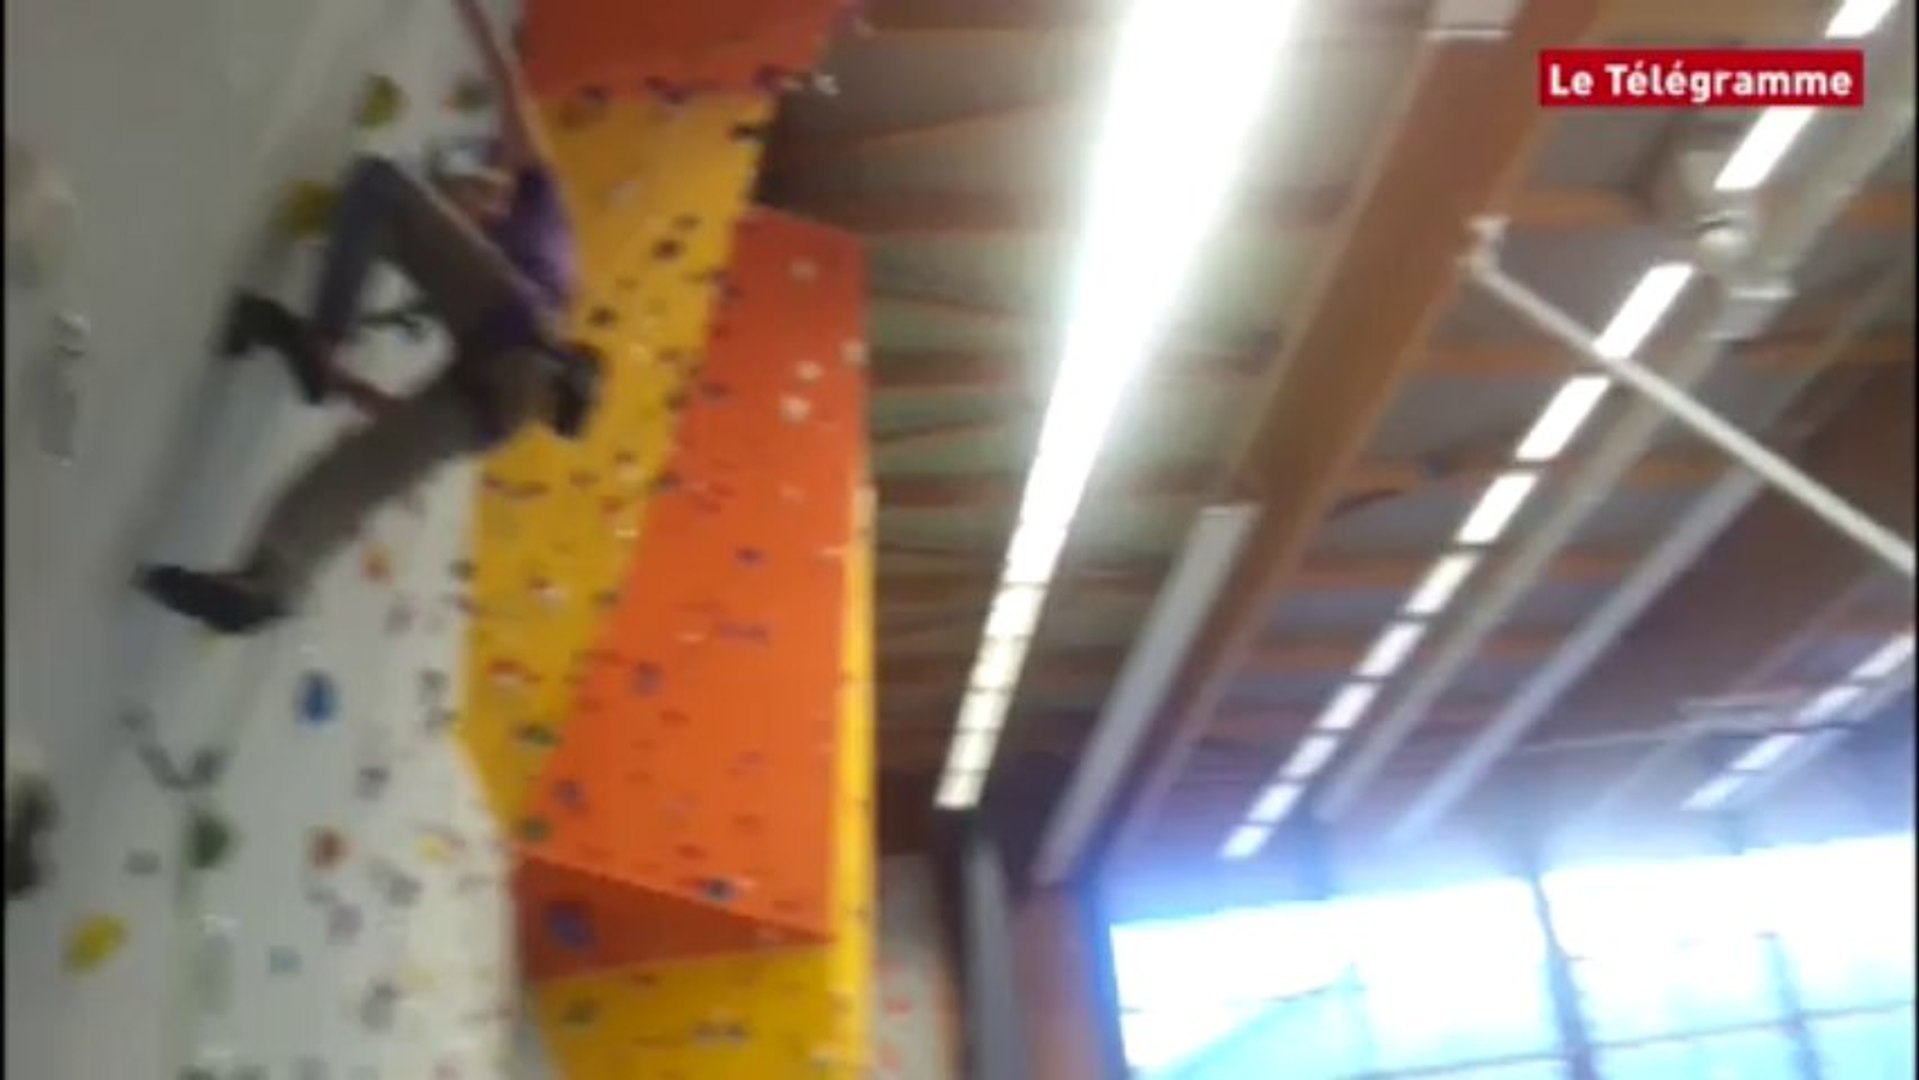 Morlaix. Inauguration du mur d'escalade de la nouvelle salle de sport du  parc Arthur-Aurégan - Vidéo Dailymotion